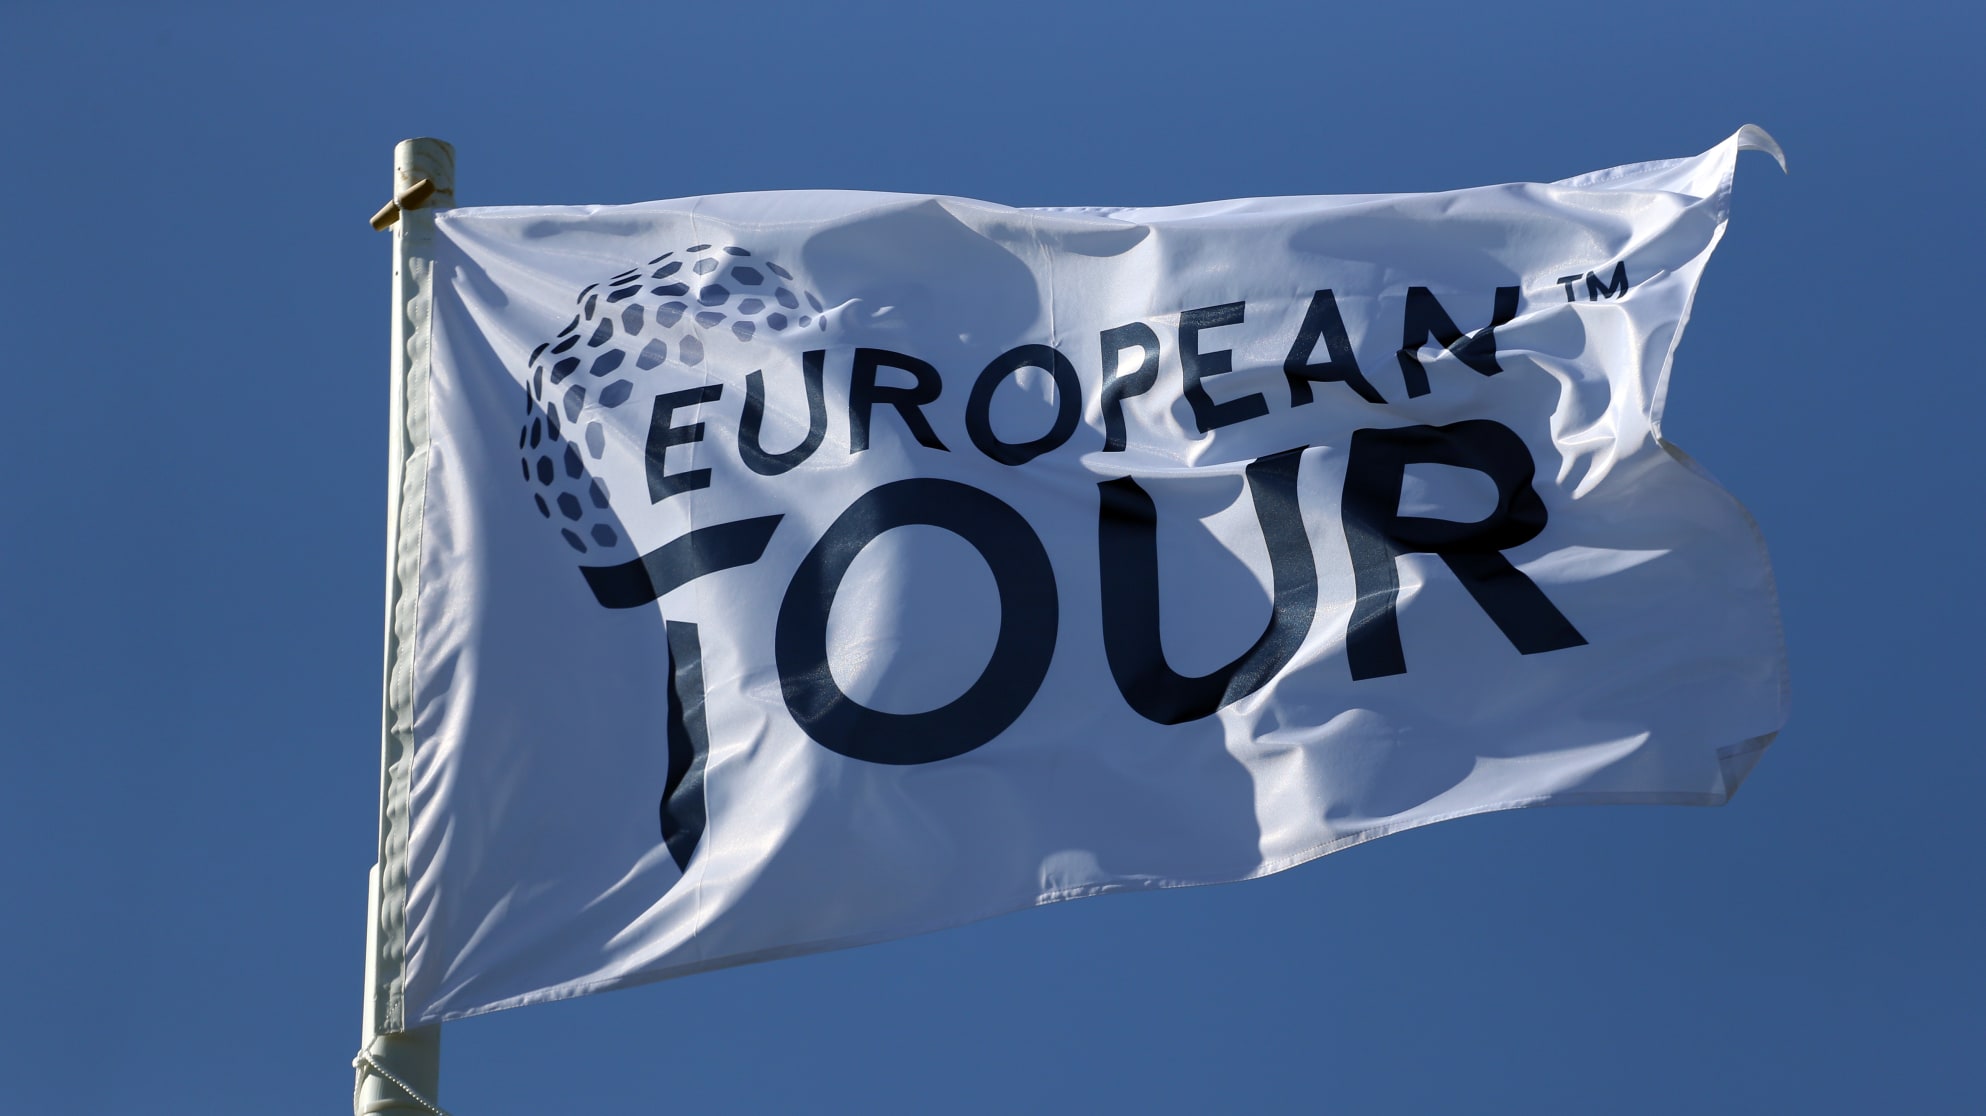 European Tour tiếp tục hủy giải, chưa xác định ngày trở lại